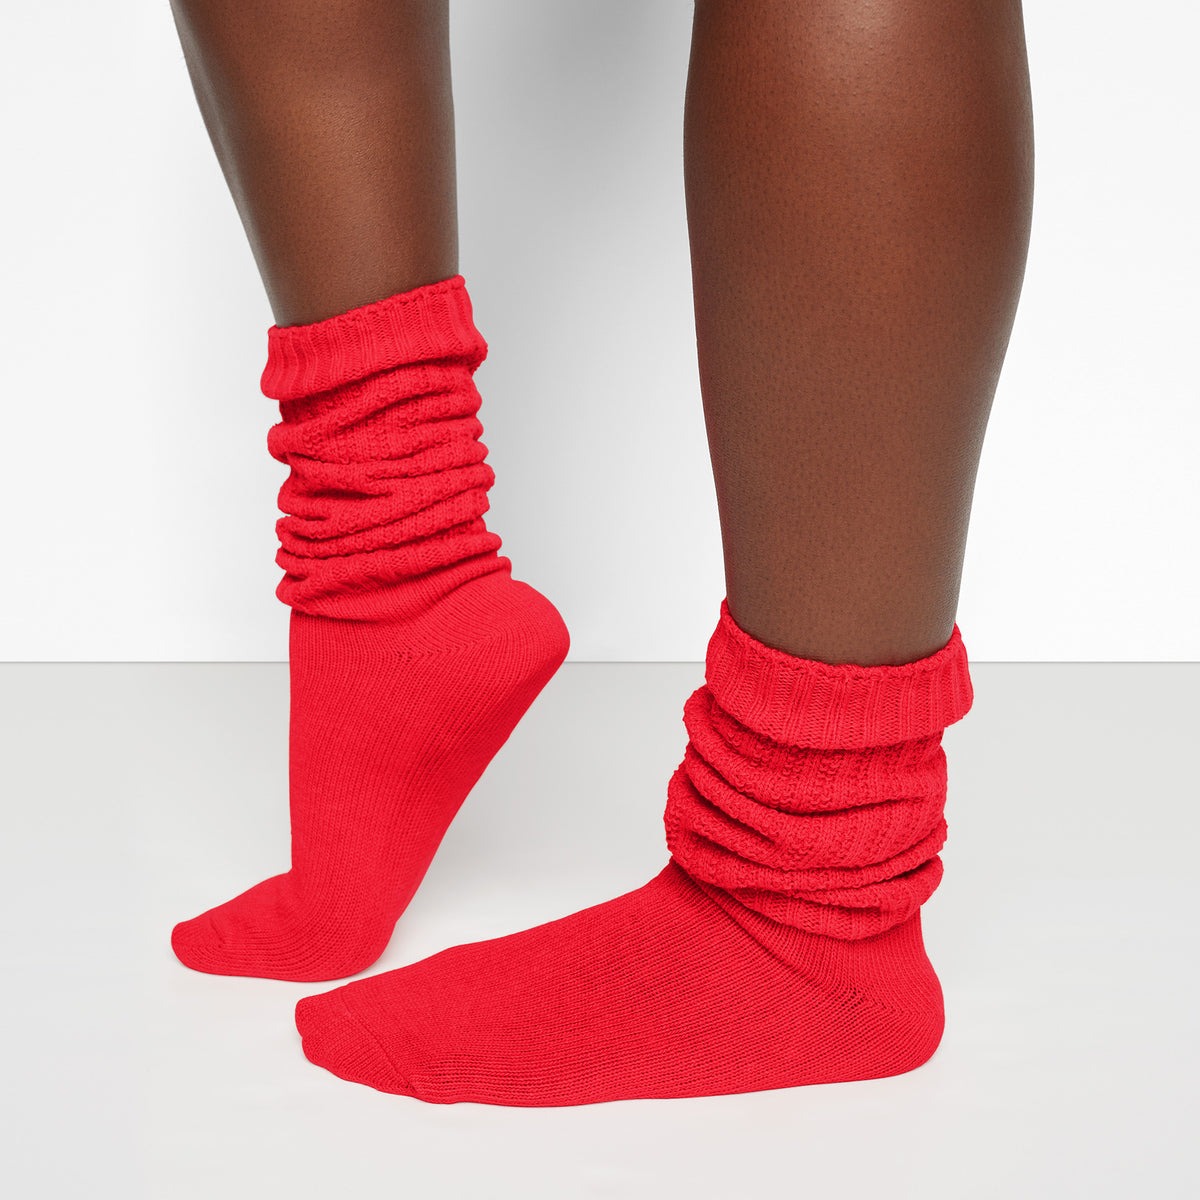 skims red slouch socks